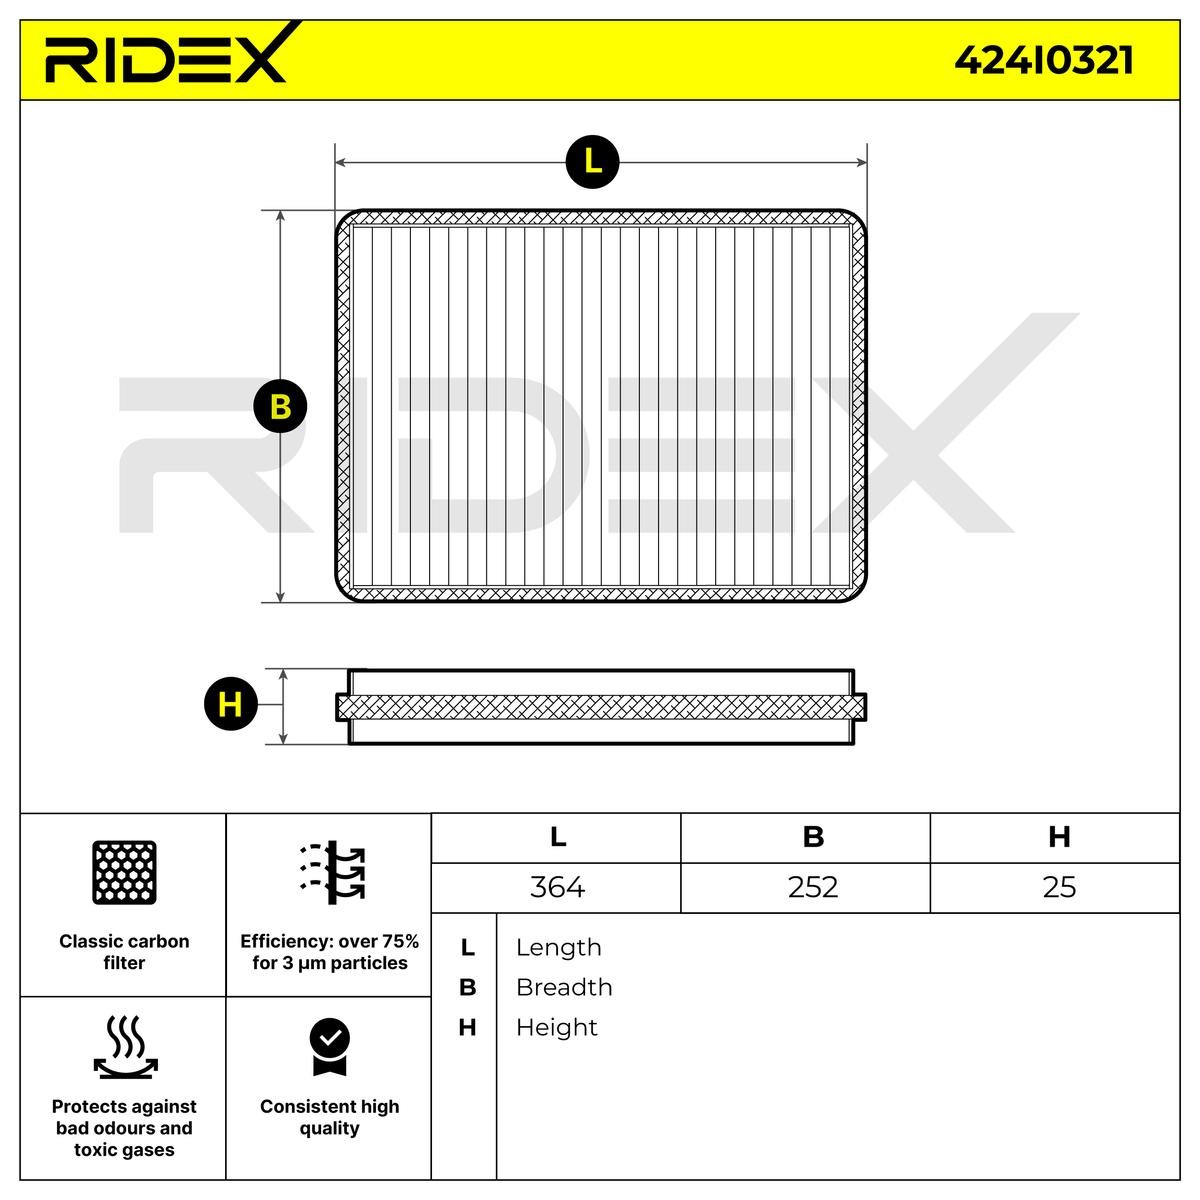 OEM-quality RIDEX 424I0321 Air conditioner filter